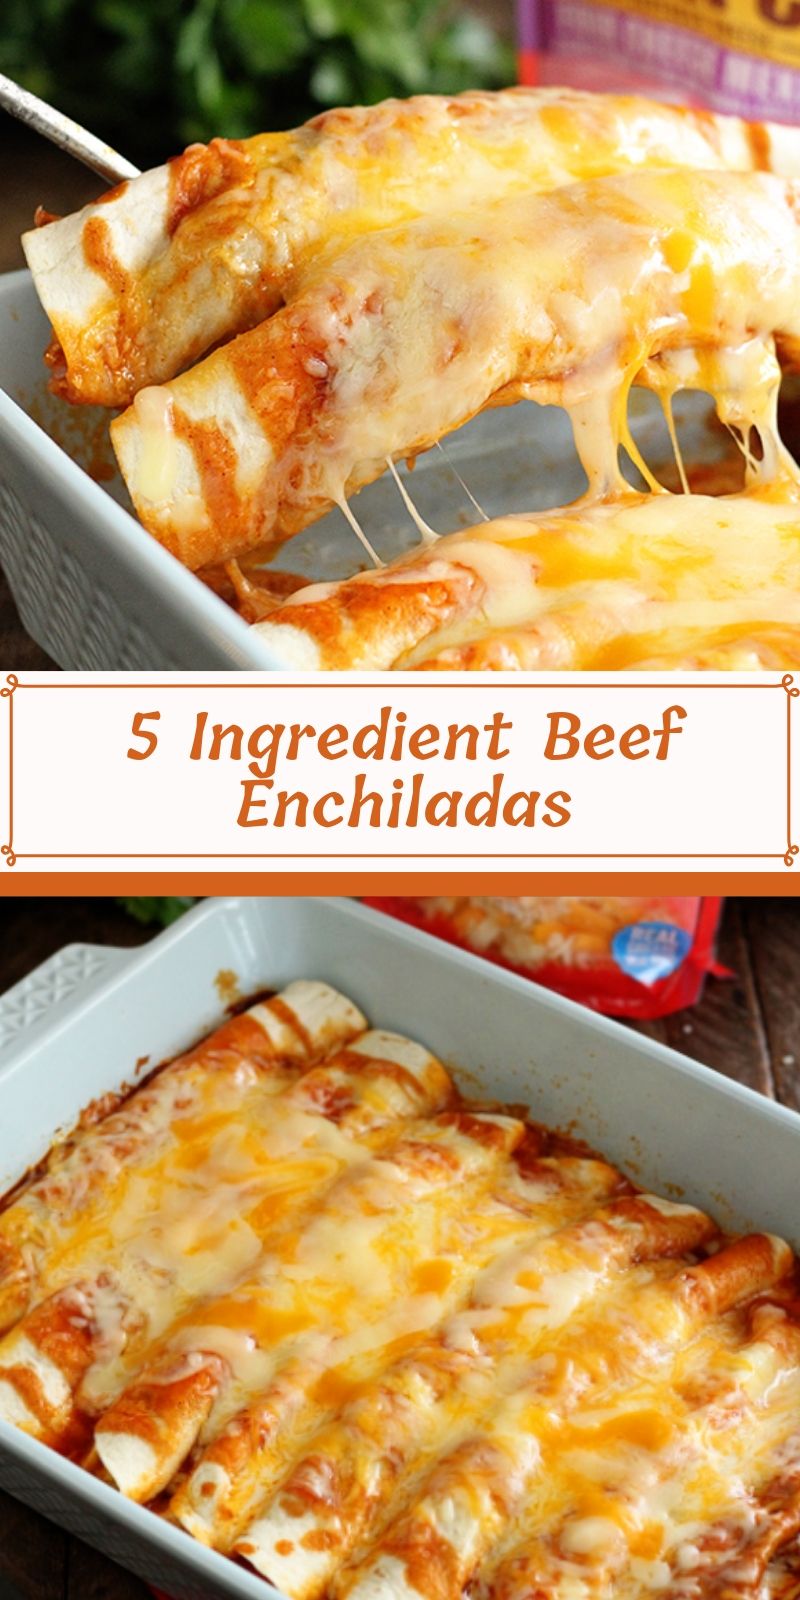 5 Ingredient Beef Enchiladas